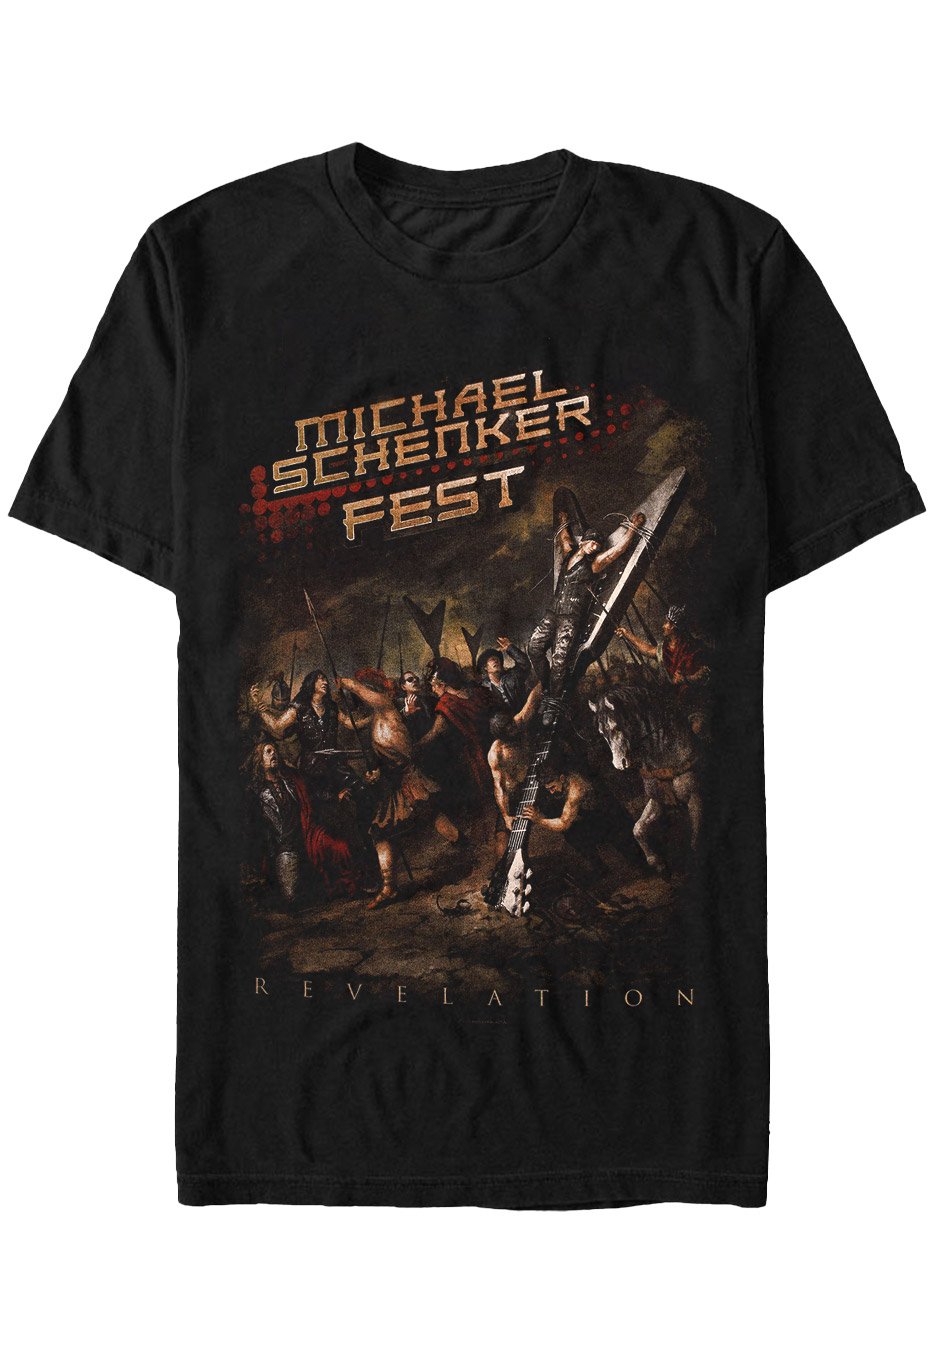 Michael Schenker Fest - Revelation - T-Shirt